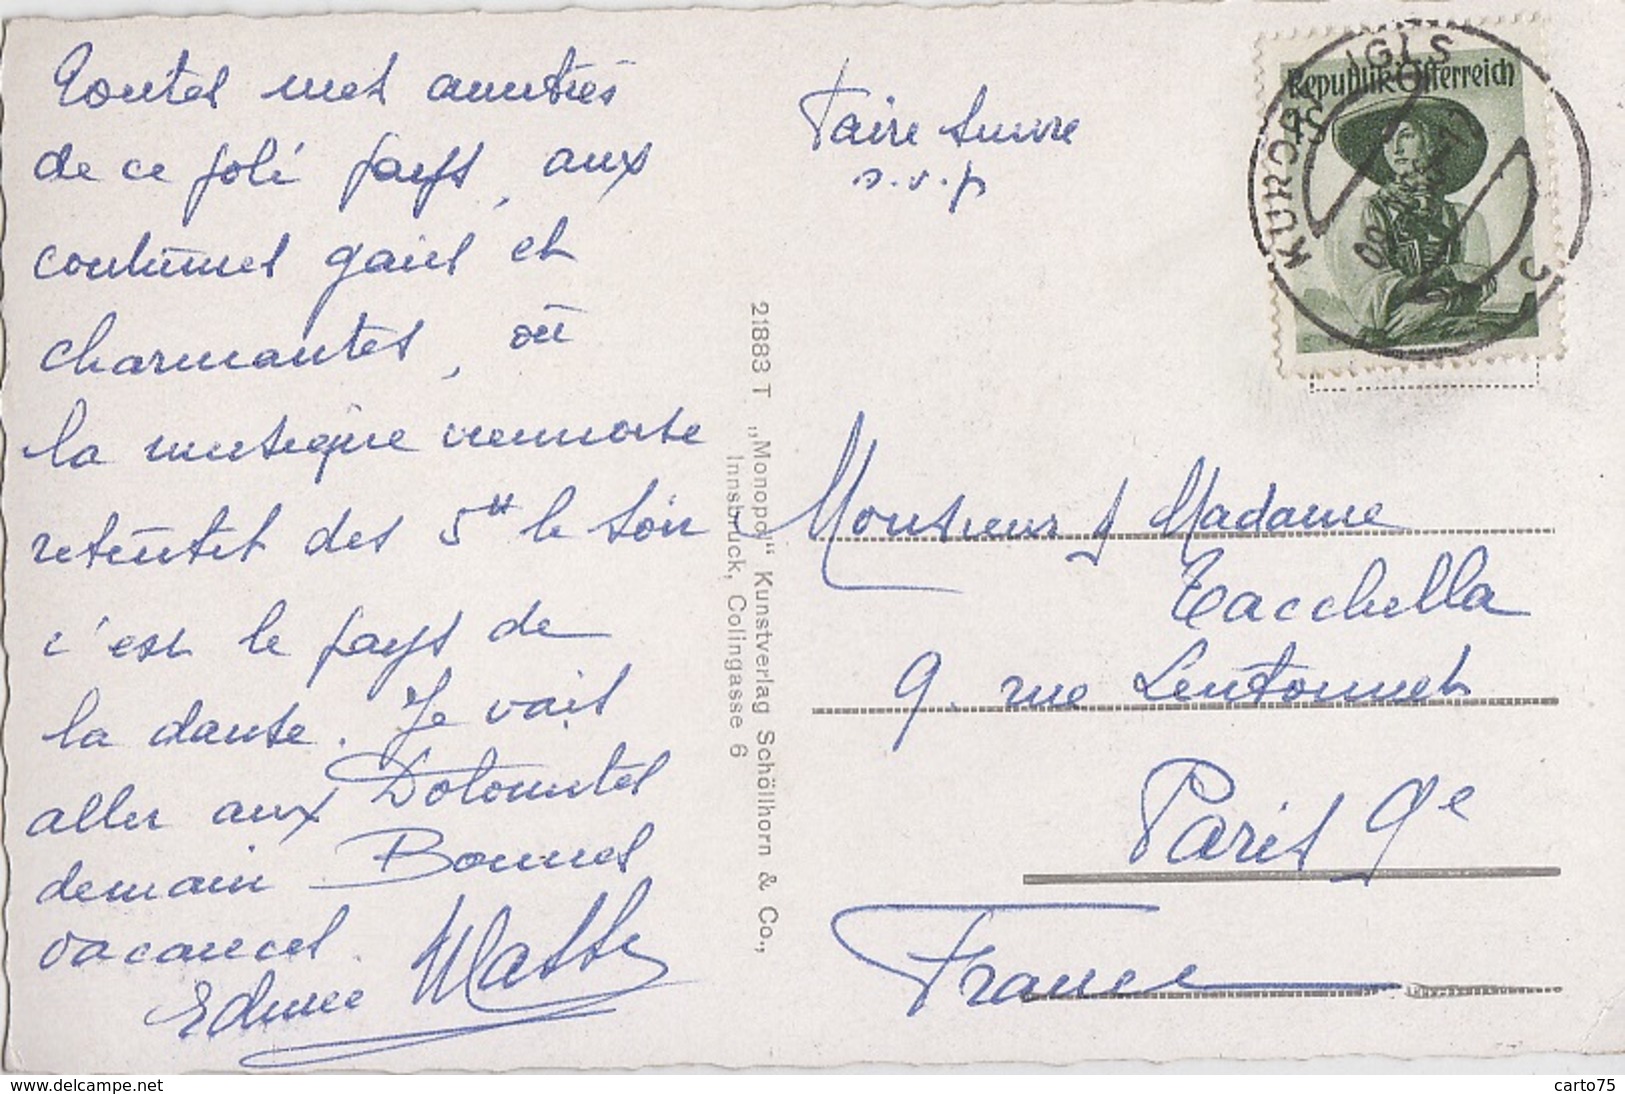 Autriche - Igls - Tirol - Postmarked 1956 - Igls